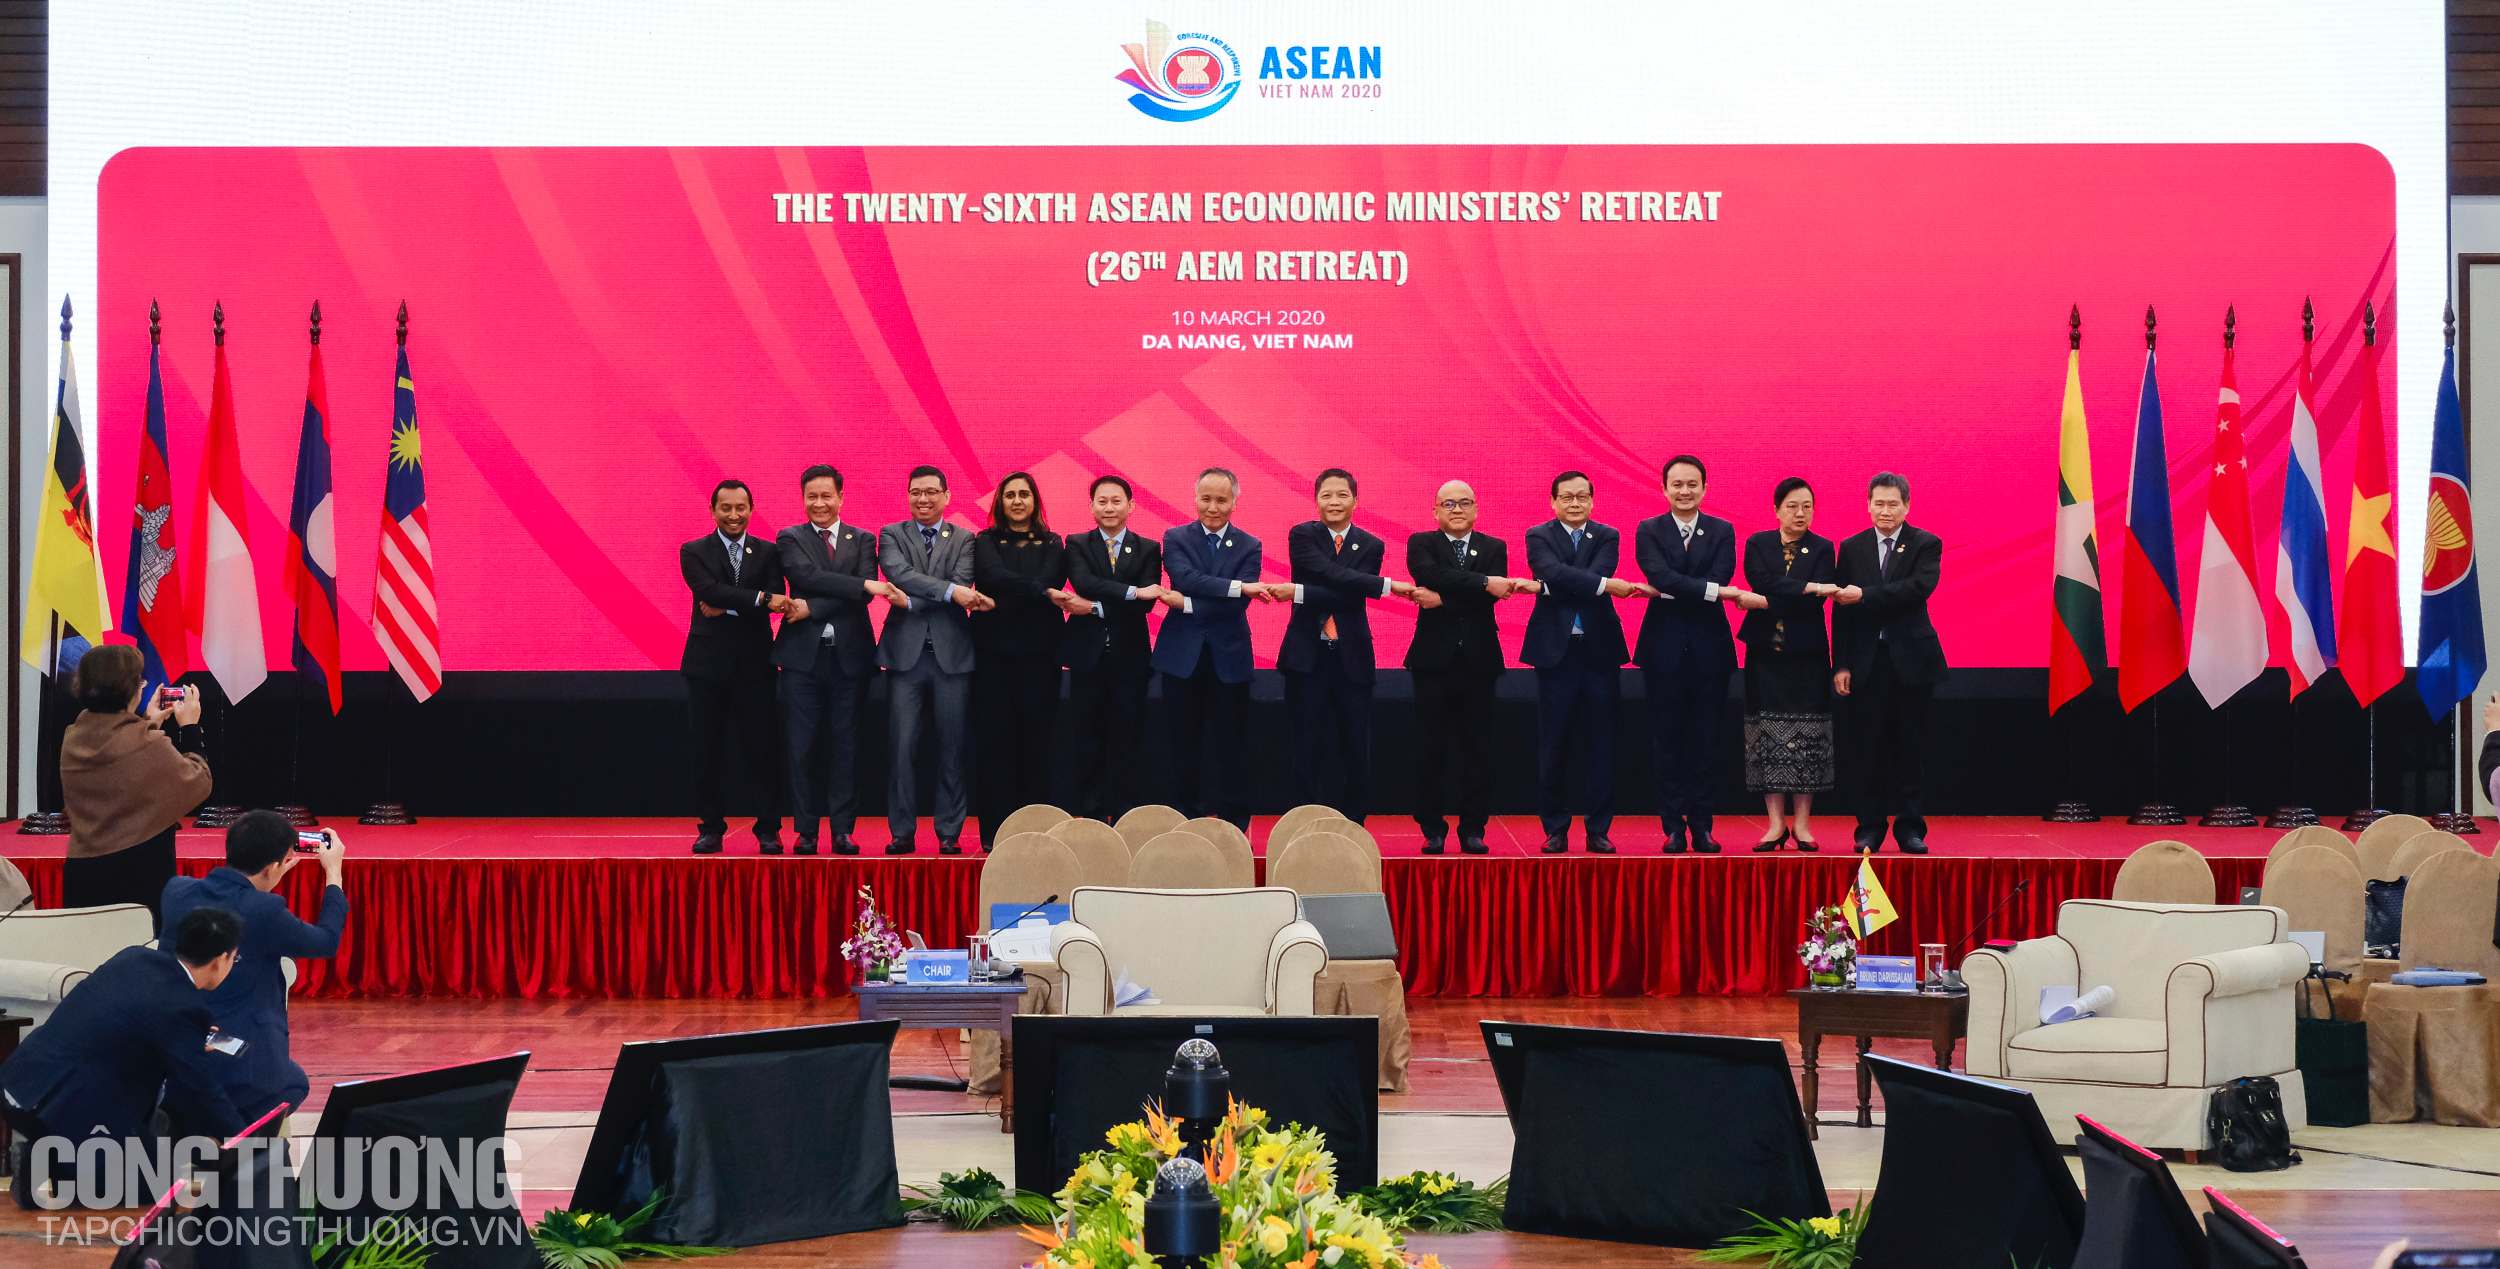 Năm Chủ tịch ASEAN 2020 nhấn mạnh vai trò trung tâm của ASEAN, đồng thời cho thấy sức mạnh và sự năng động của khu vực trong ứng phó với những bất ổn toàn cầu